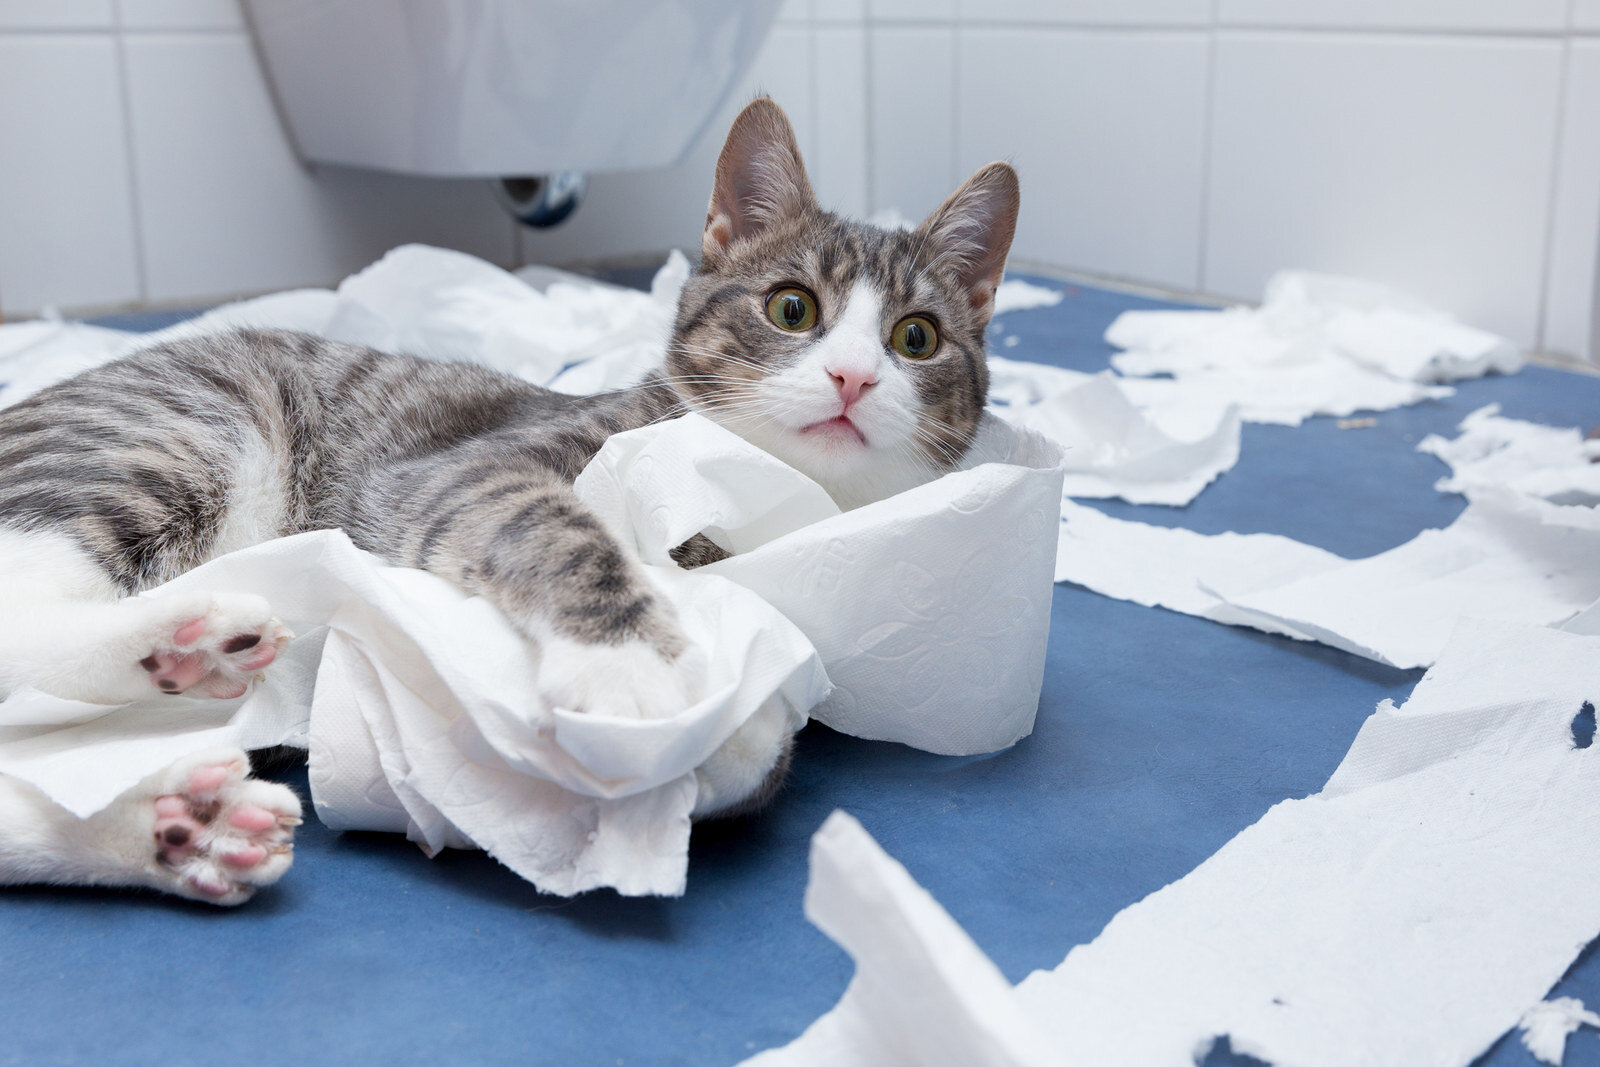 tuvalet kağıdı ile oynayan kedi